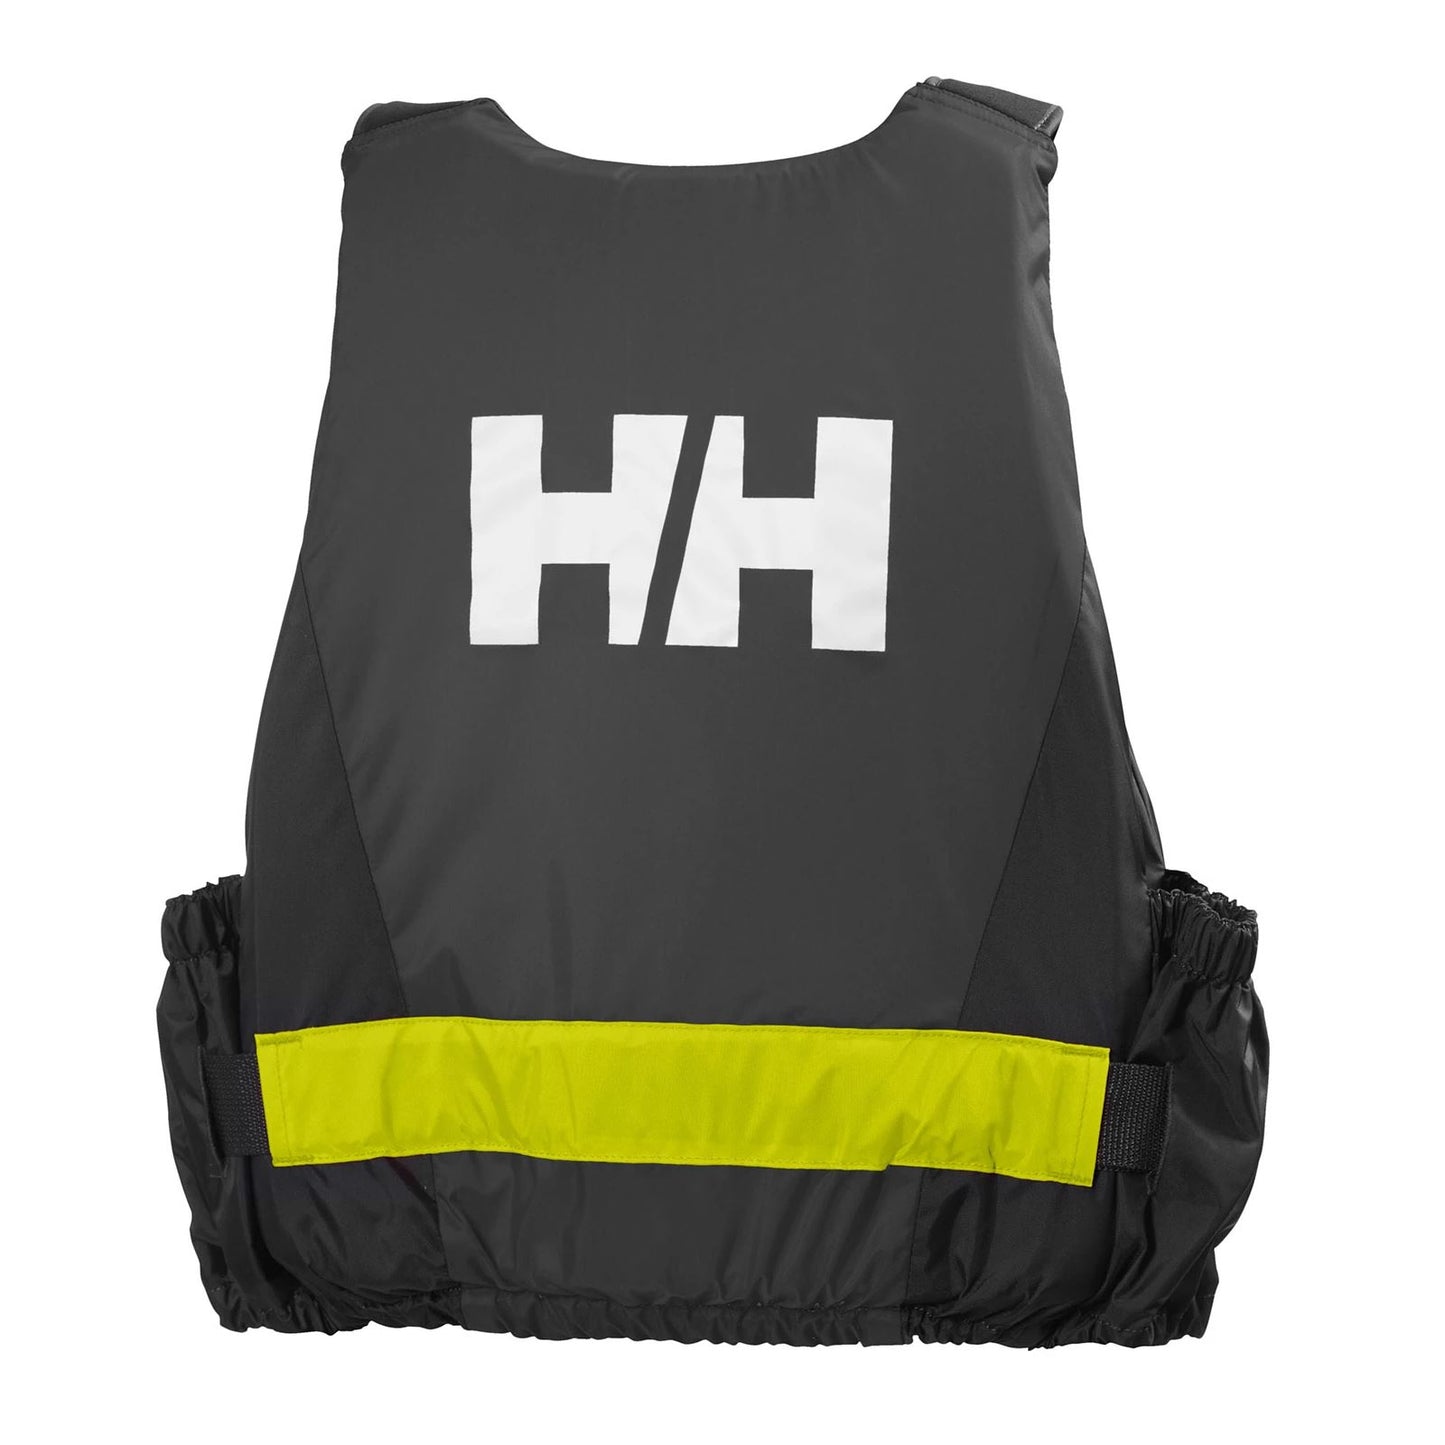 Helly Hansen Rider Vest Buoyancy Aids